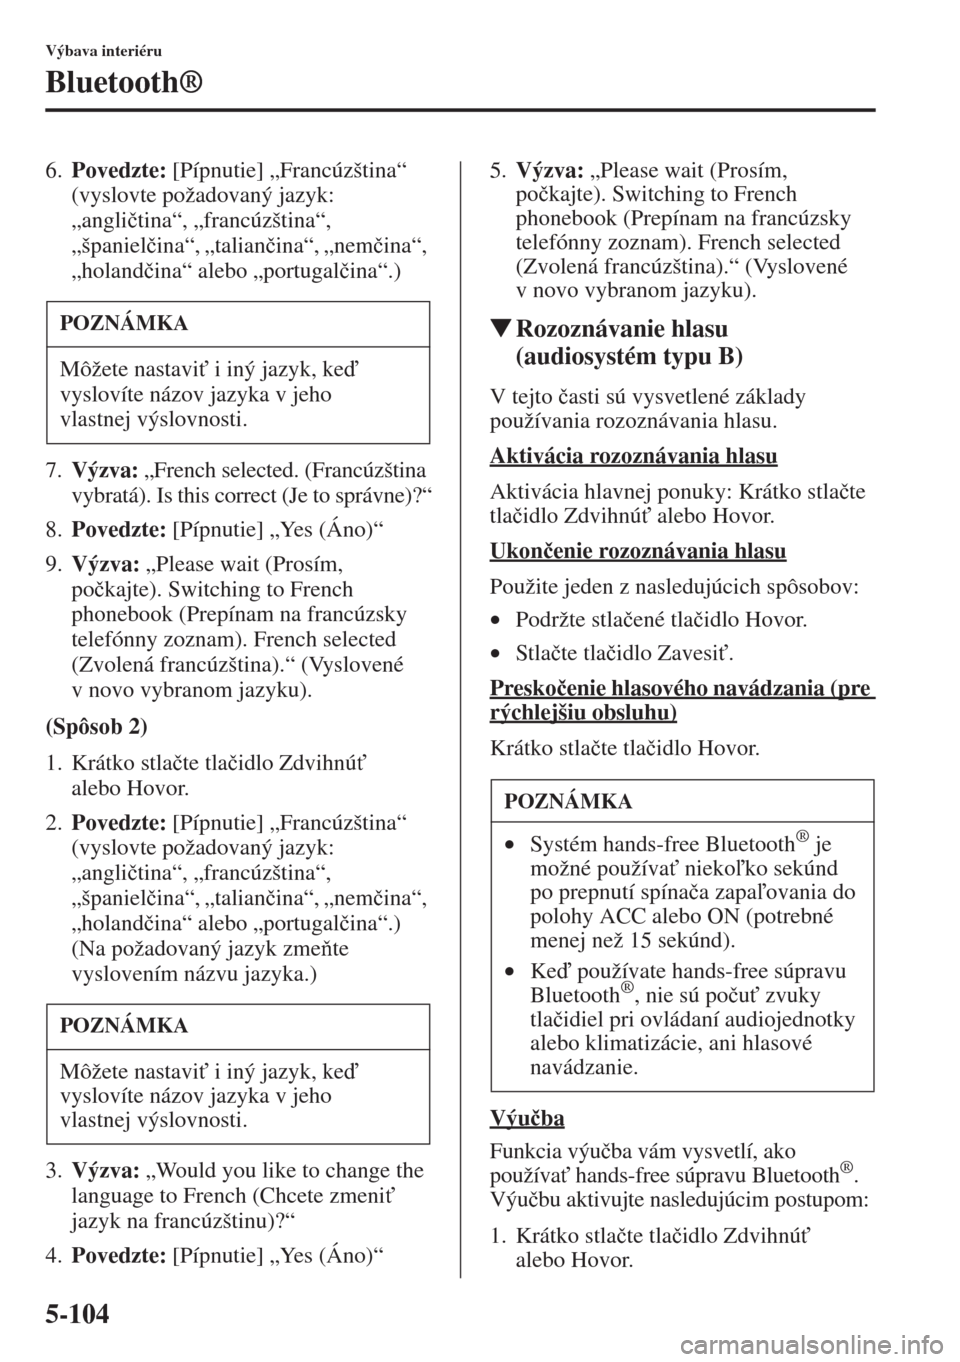 MAZDA MODEL CX-5 2015  Užívateľská príručka (in Slovak) 5-104
Výbava interiéru
Bluetooth®
6.Povedzte: [Pípnutie] „Francúzština“ 
(vyslovte požadovaný jazyk: 
„angli�þtina“, „francúzština“, 
„španiel�þina“, „talian�þina“, �